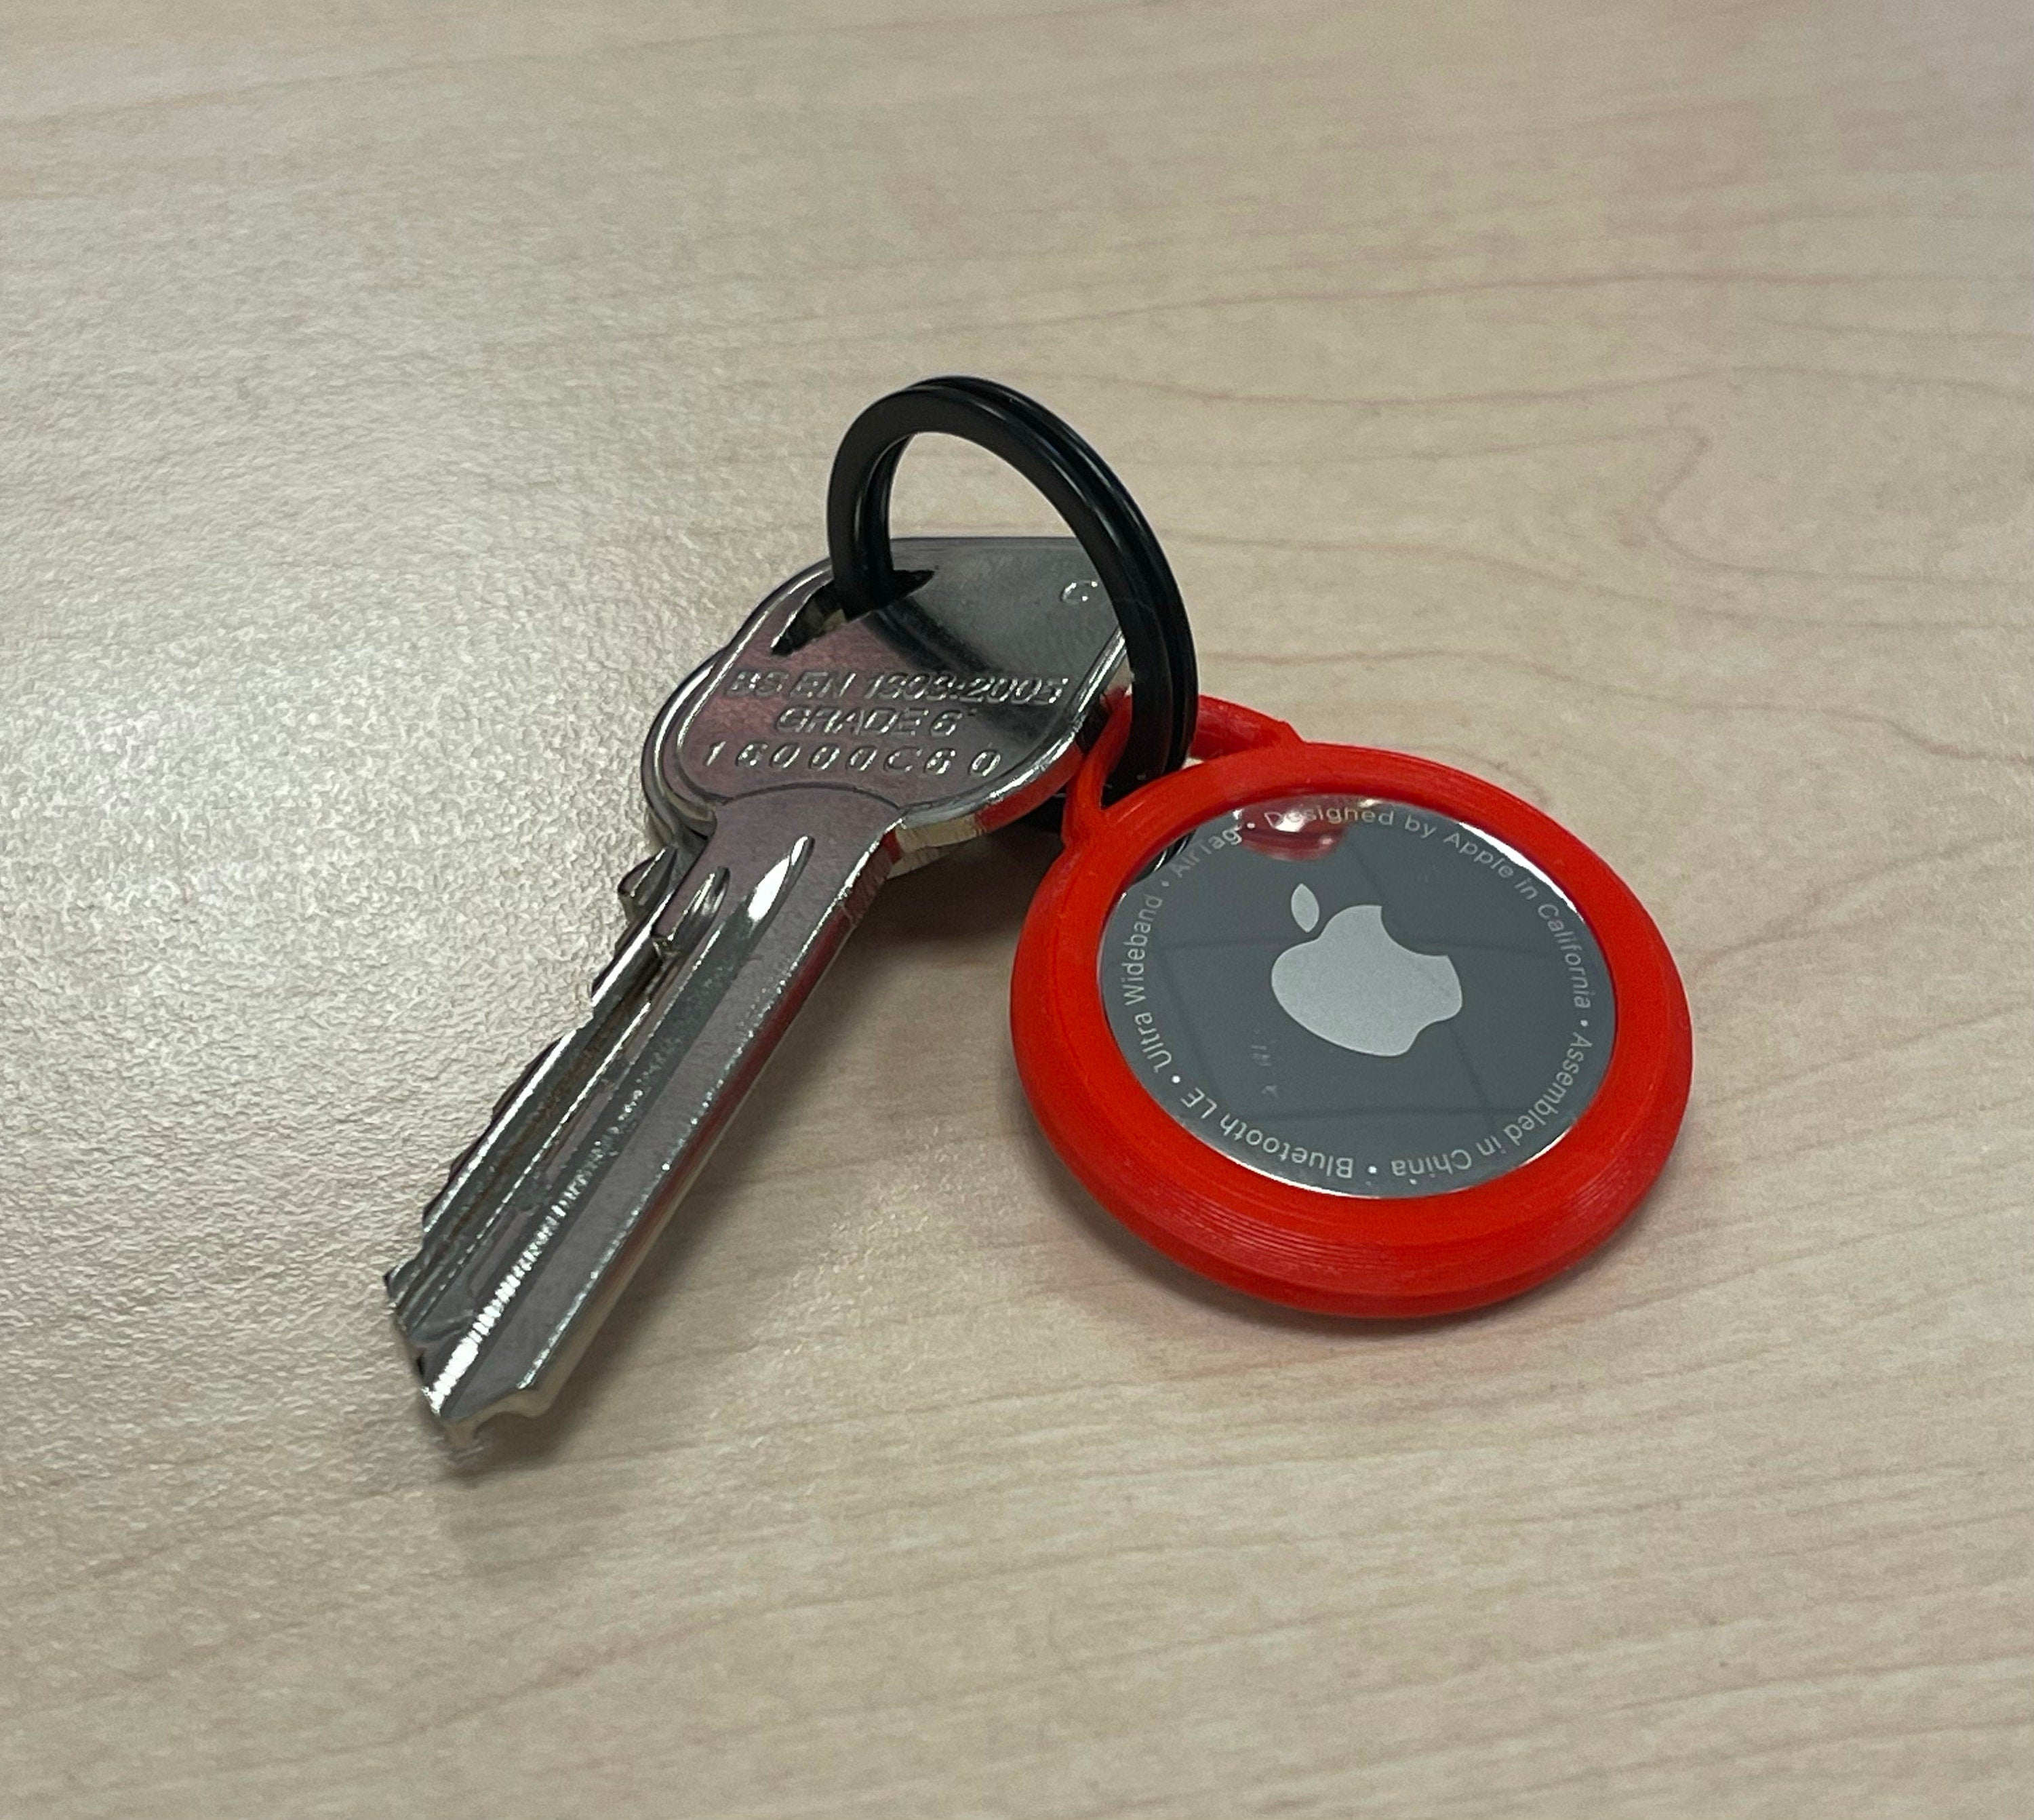 Apple Air Tag Keychain 3D model 3D printable